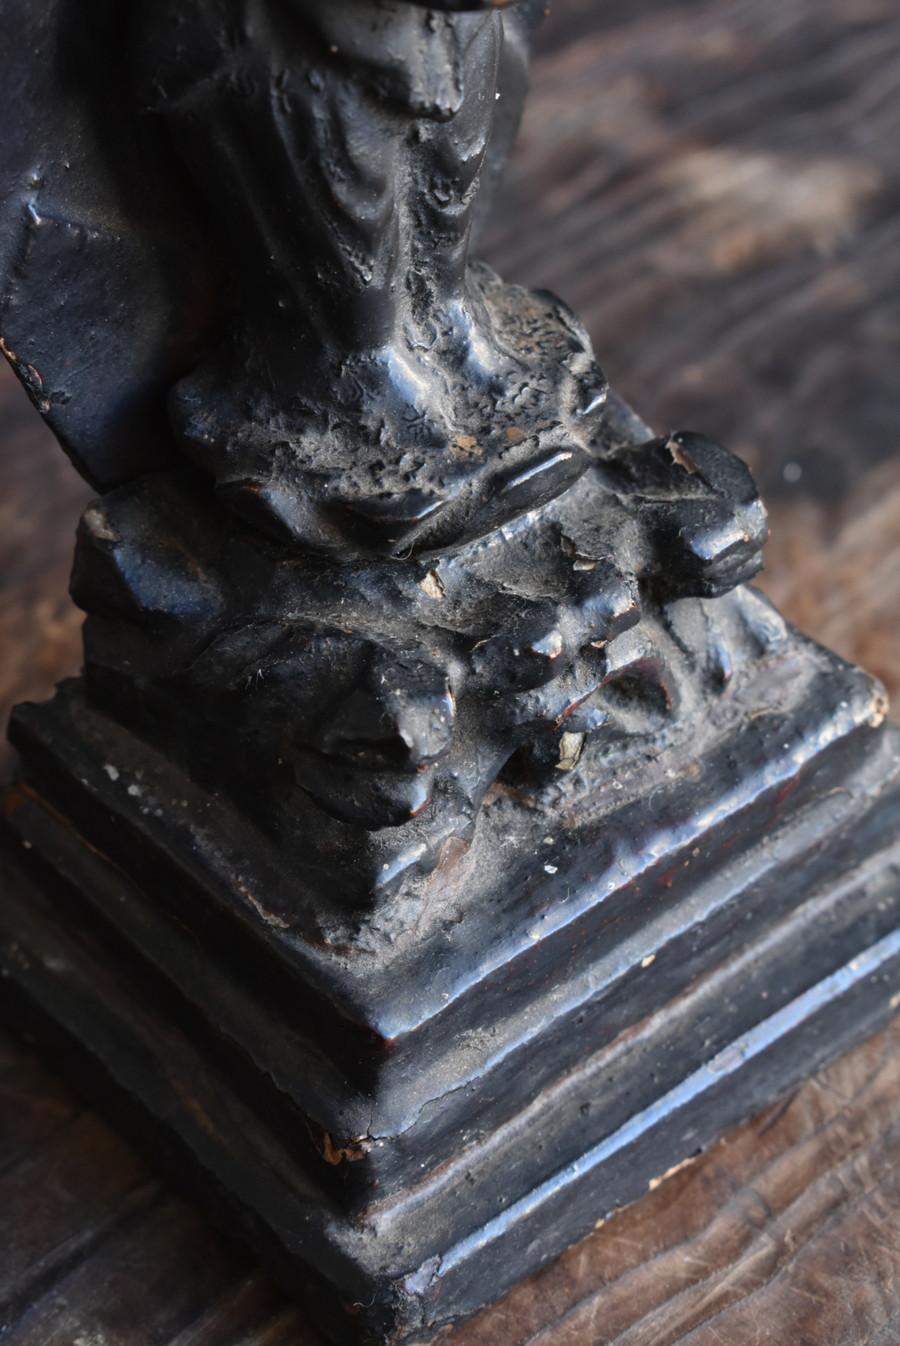 Kleine hölzerne Buddha-Statue aus Holz, bemalt mit japanischem Lack/